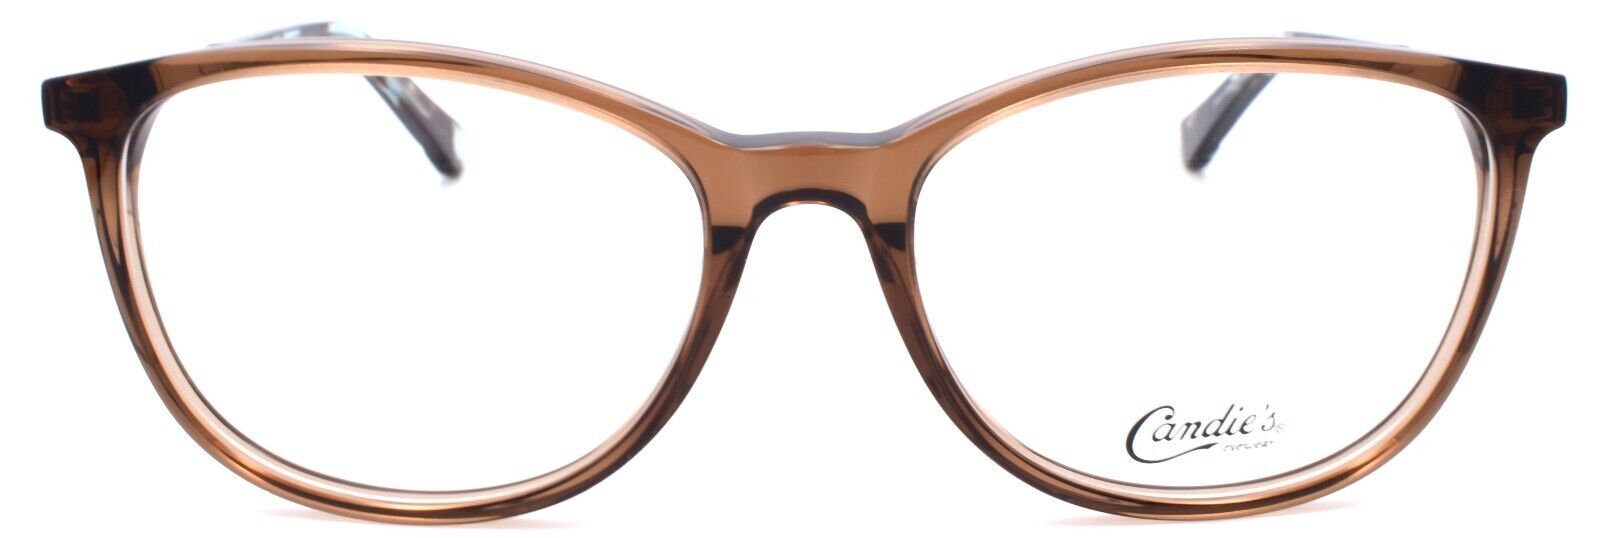 2-Candies CA0503 047 Women's Eyeglasses Frames 50-16-135 Light Brown-664689978656-IKSpecs